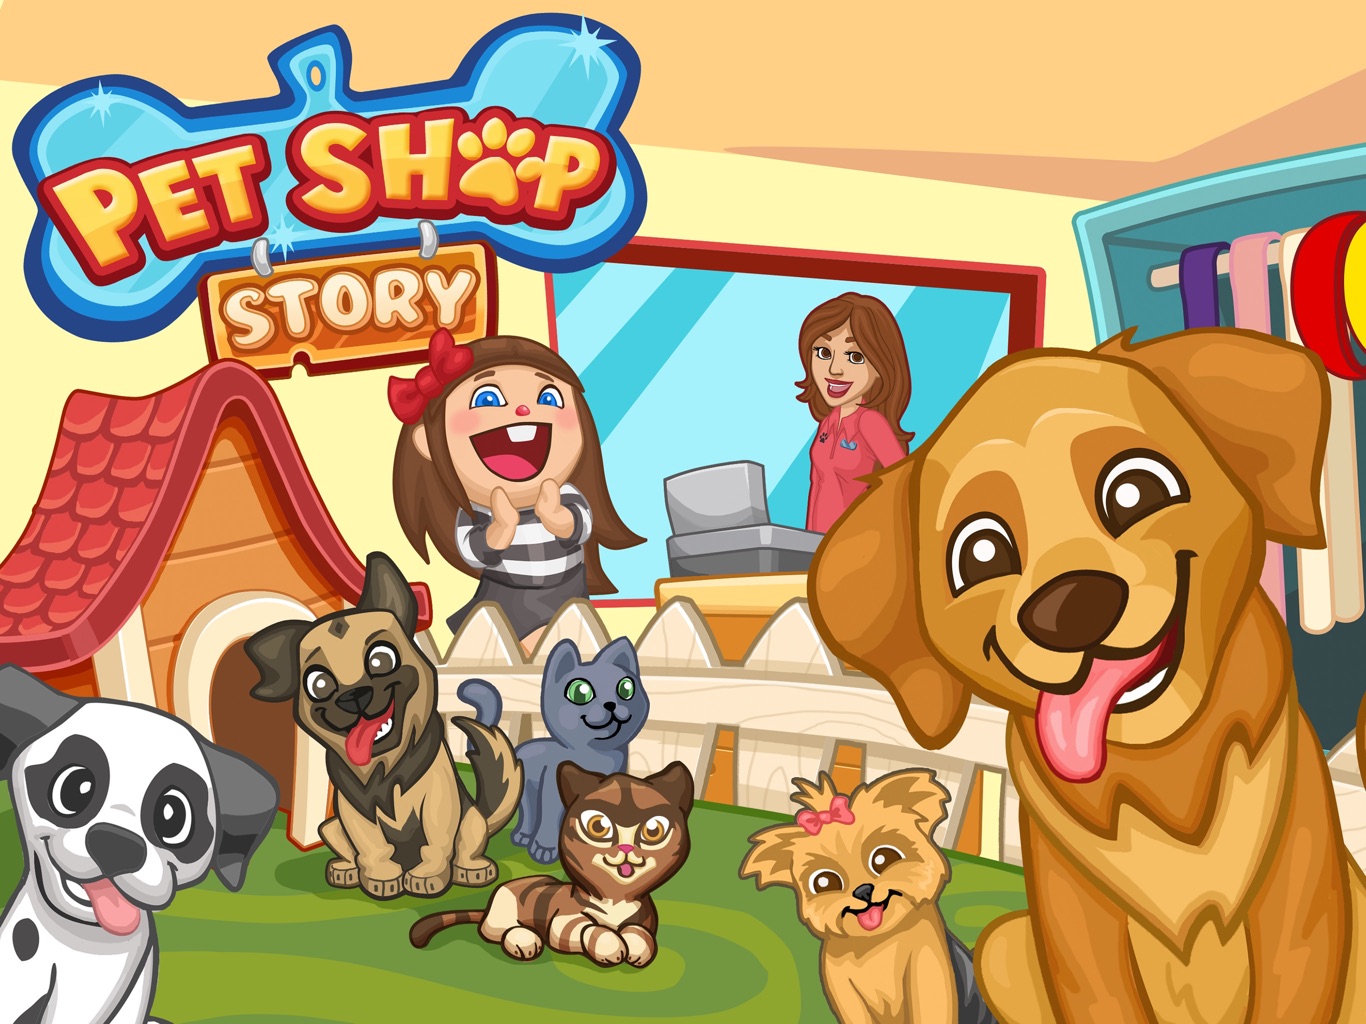 Games play shop. Зоомагазин мультяшный. Зоомагазин картинки для детей. Игра Pets. Pet shop картинка для детей.